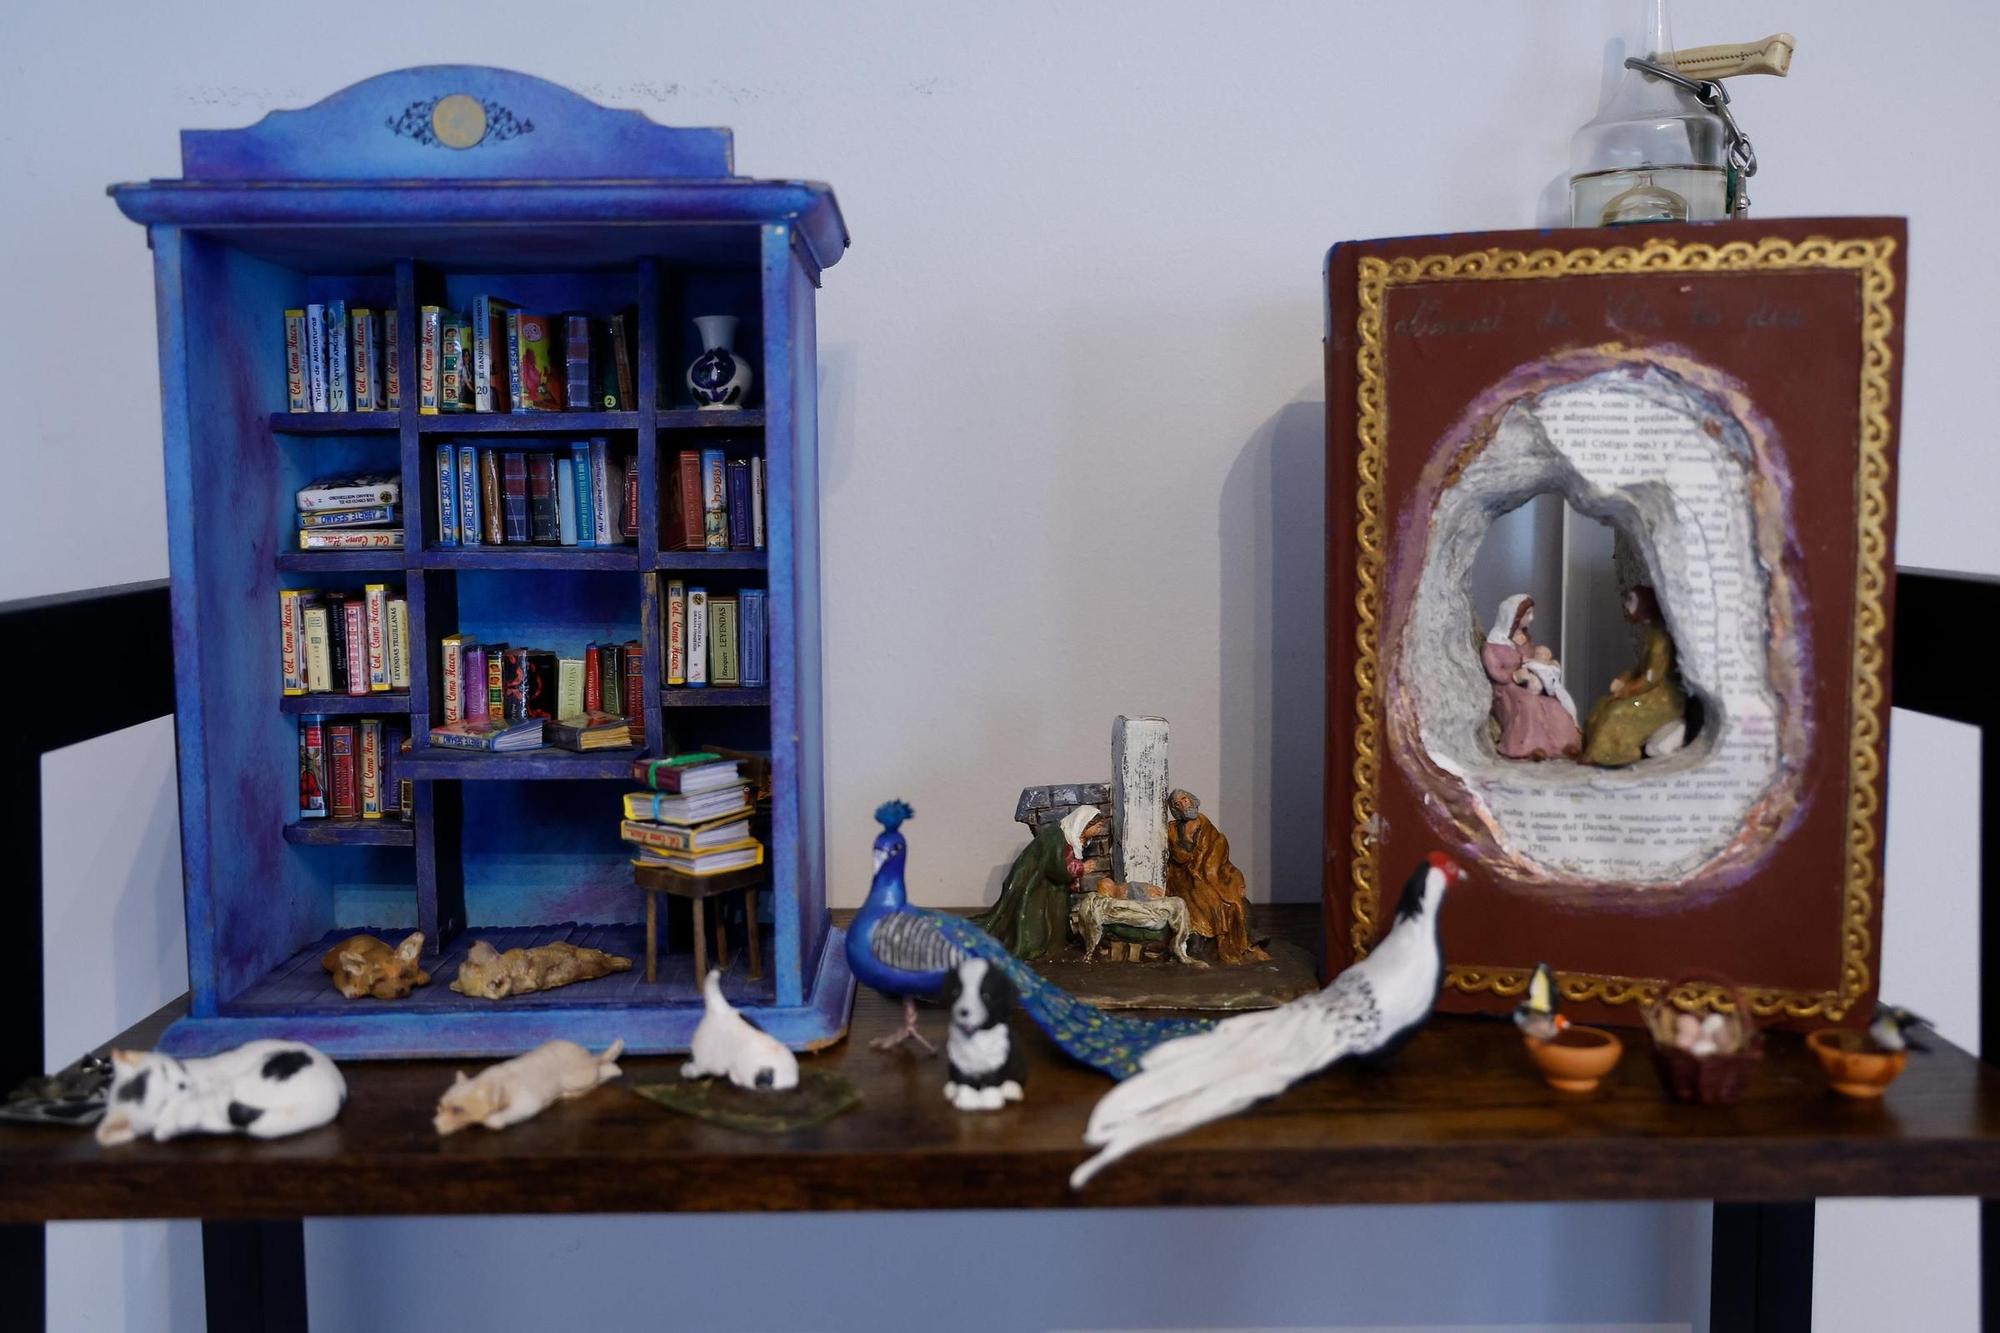 Lupe Soto elabora animales, frutas o libros en miniatura, personalizados y perfectamente legibles, desde recetarios de cocina a la colección de Harry Potter